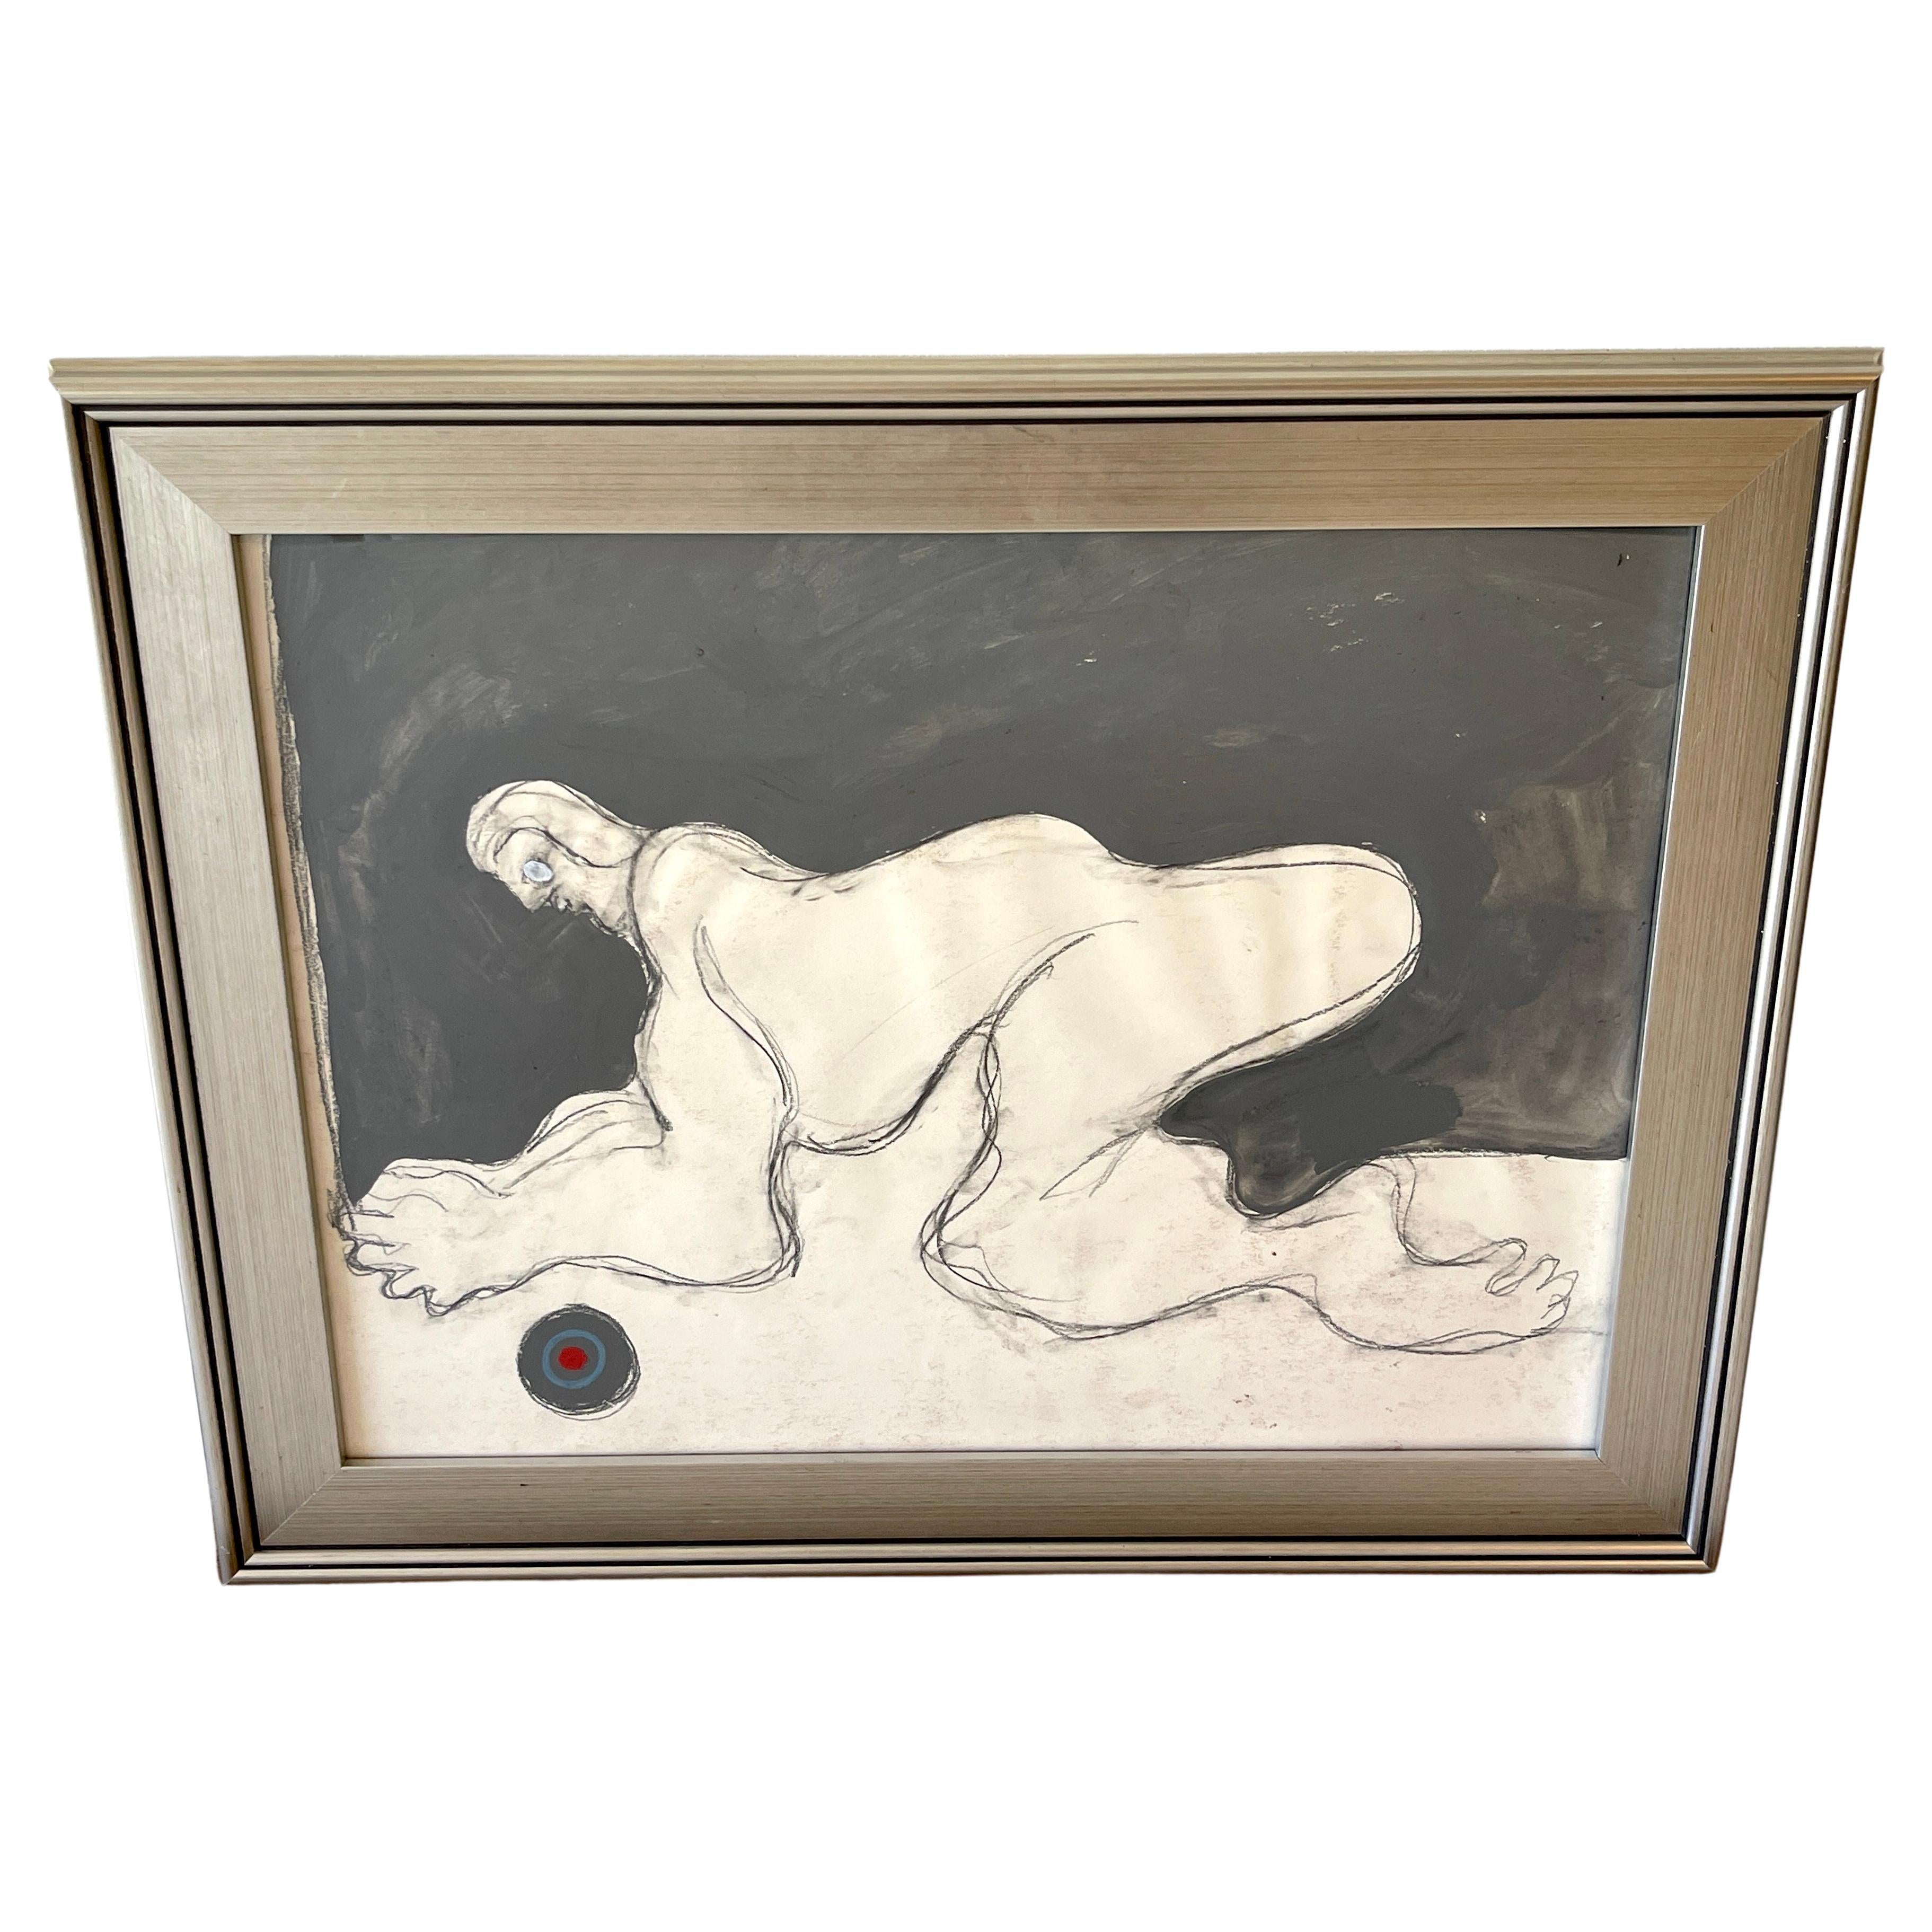  Crouching Figure , huile/mdias mixtes sur papier de Douglas D. Peden, annes 1960 